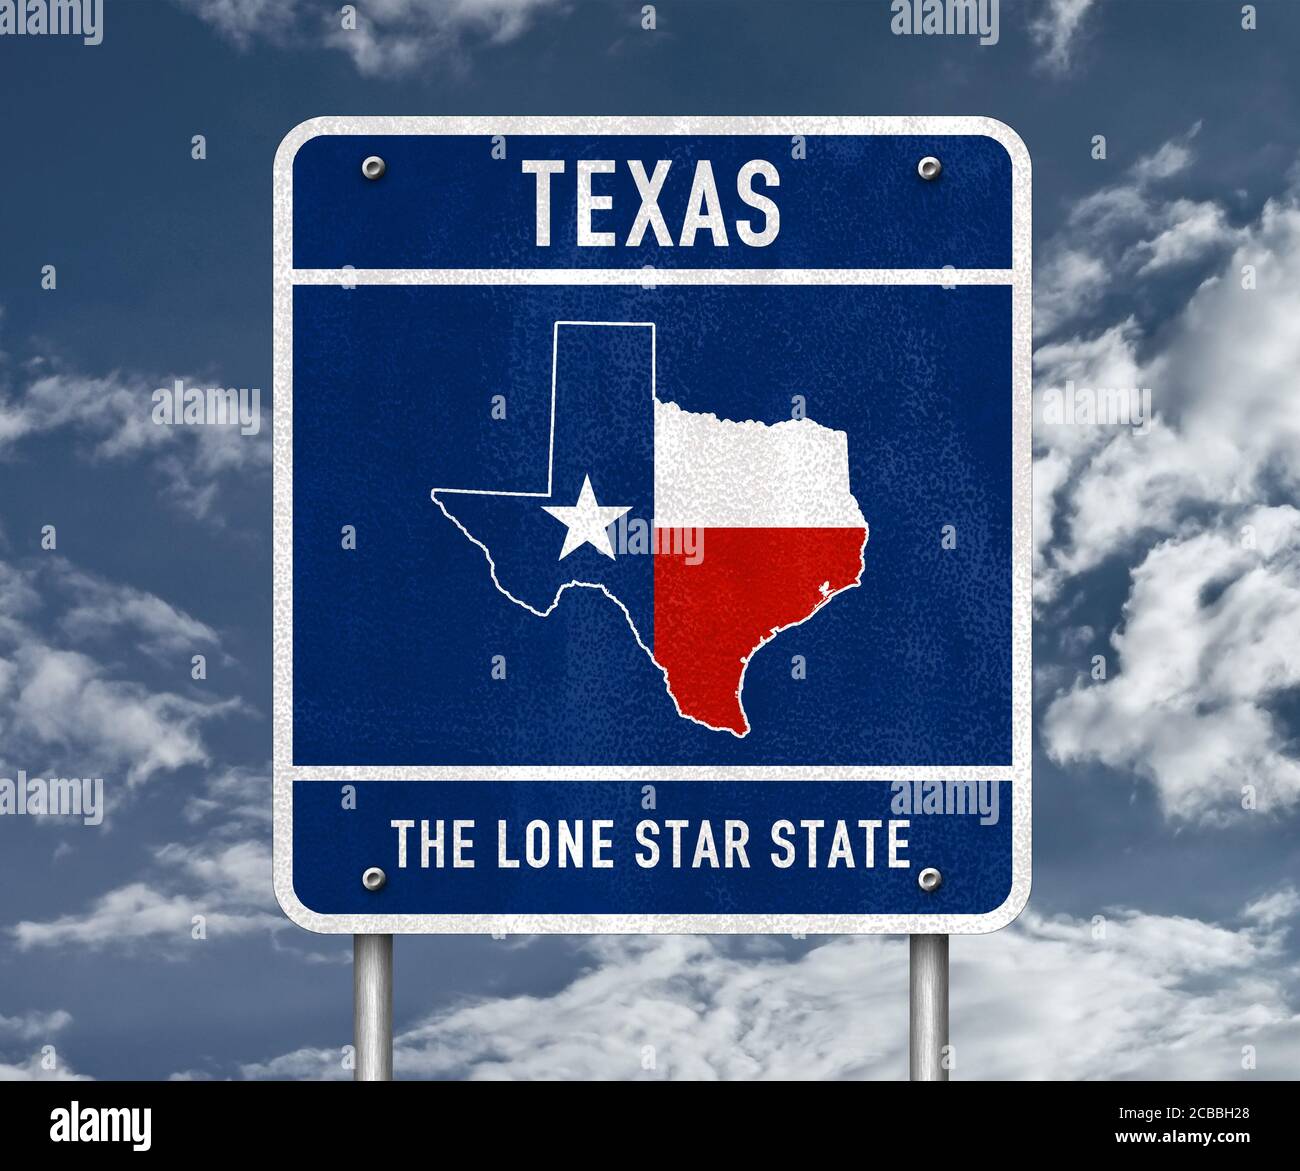 Texas - l'état de l'étoile solitaire Banque D'Images